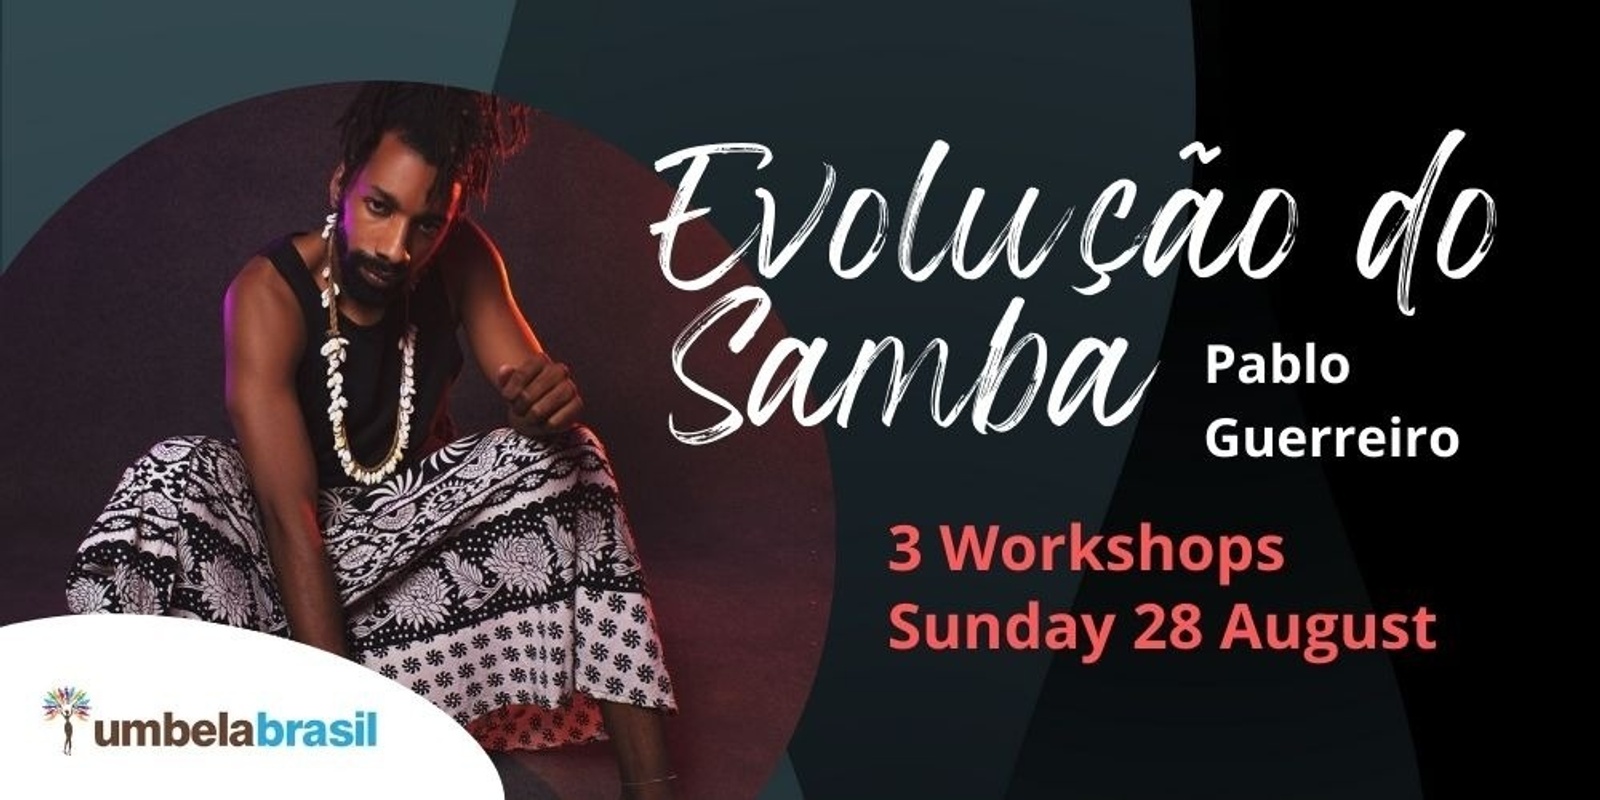 Banner image for Evolução do Samba | Pablo Guerreiro workshops